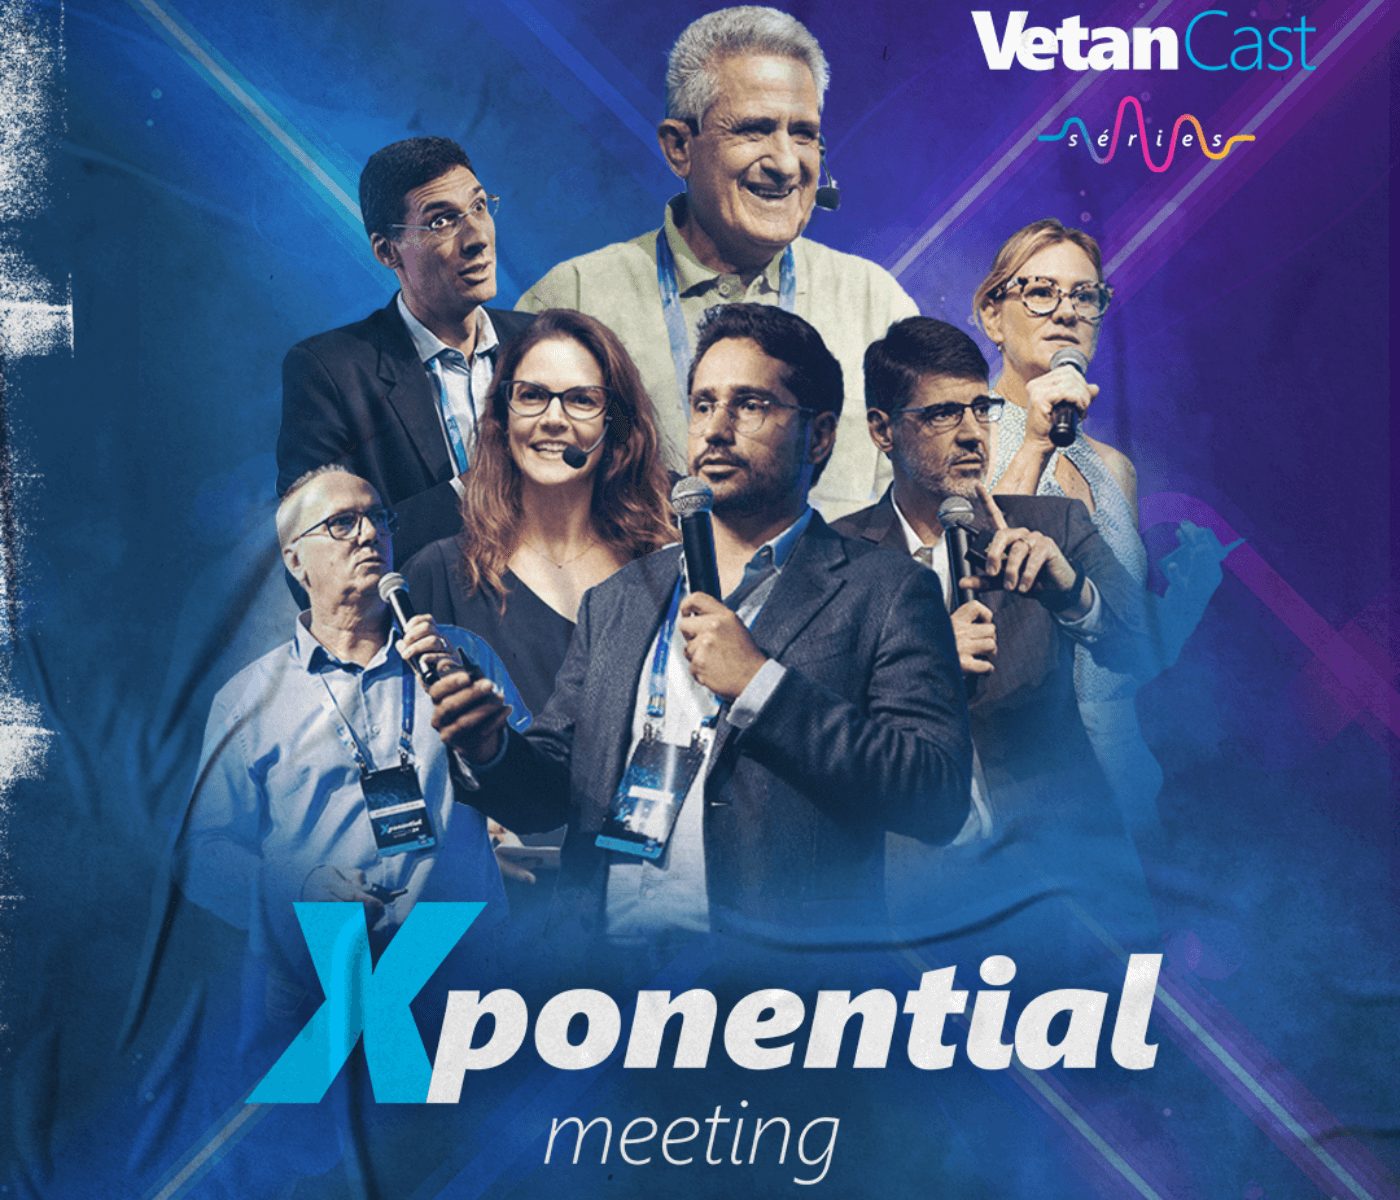 VetanCast Séries Xponential Meeting está disponível nos canais da Vetanco